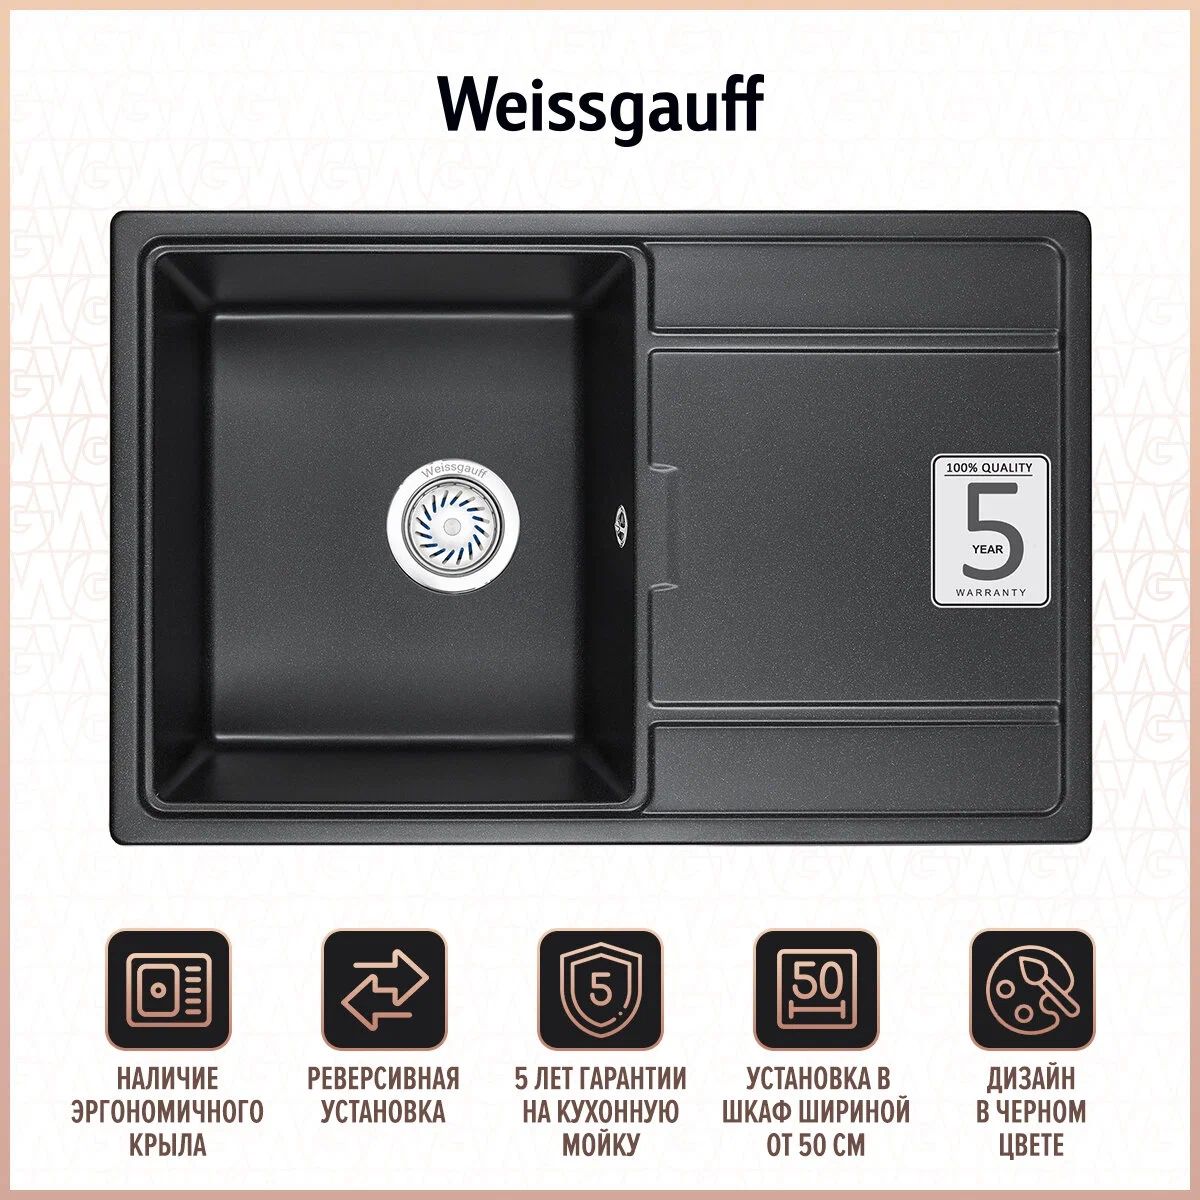 Мойка Weissgauff WG 5071 кухонные принадлежности персия серый р 135х180